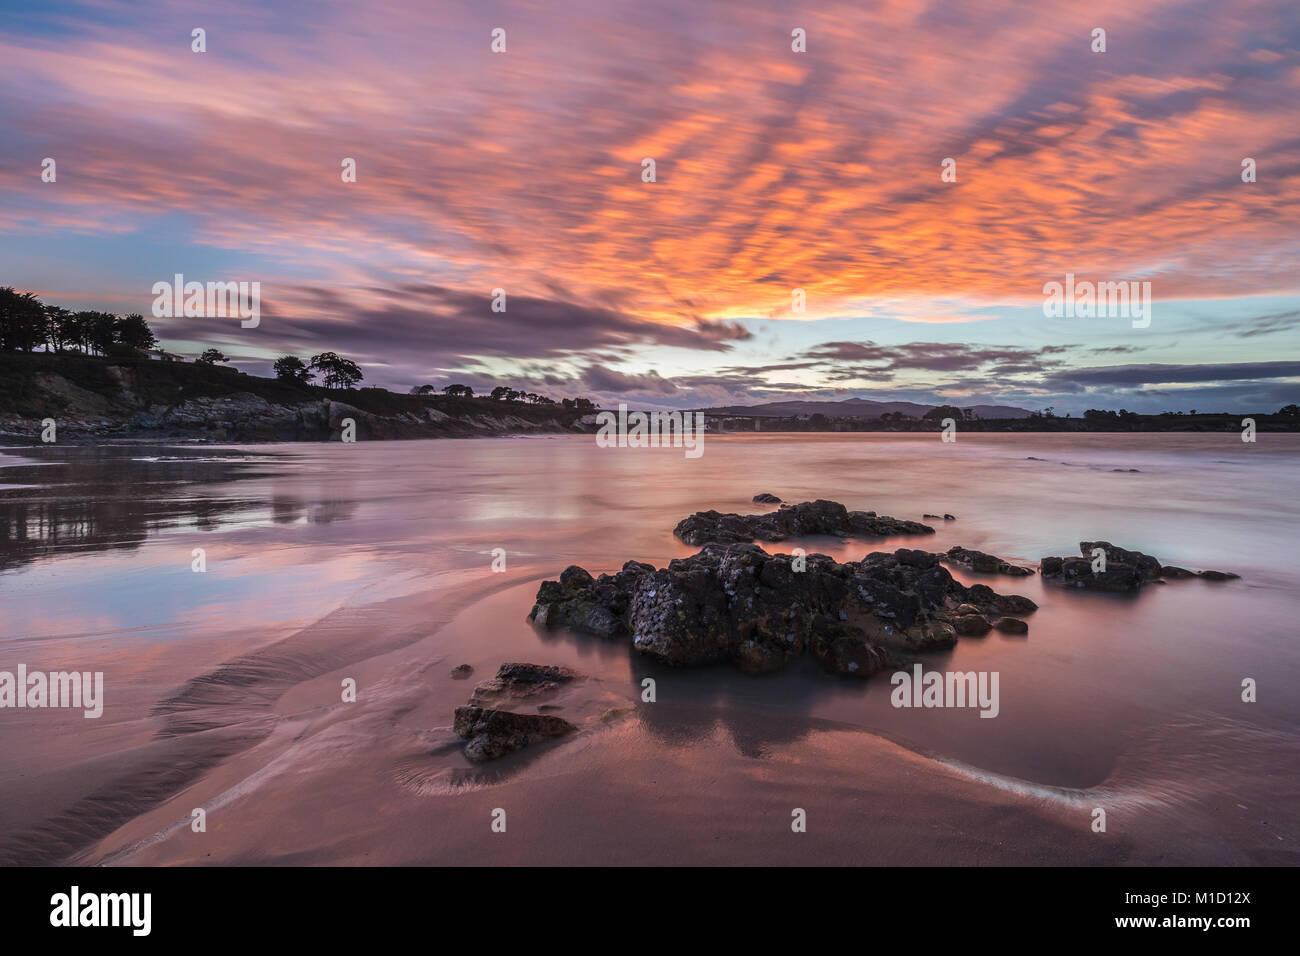 Espectacular atardecer en la playa de Arnao, Asturias, fotografías de los diferentes colores, formas y texturas de las nubes, se refleja en la fina arena Foto de stock